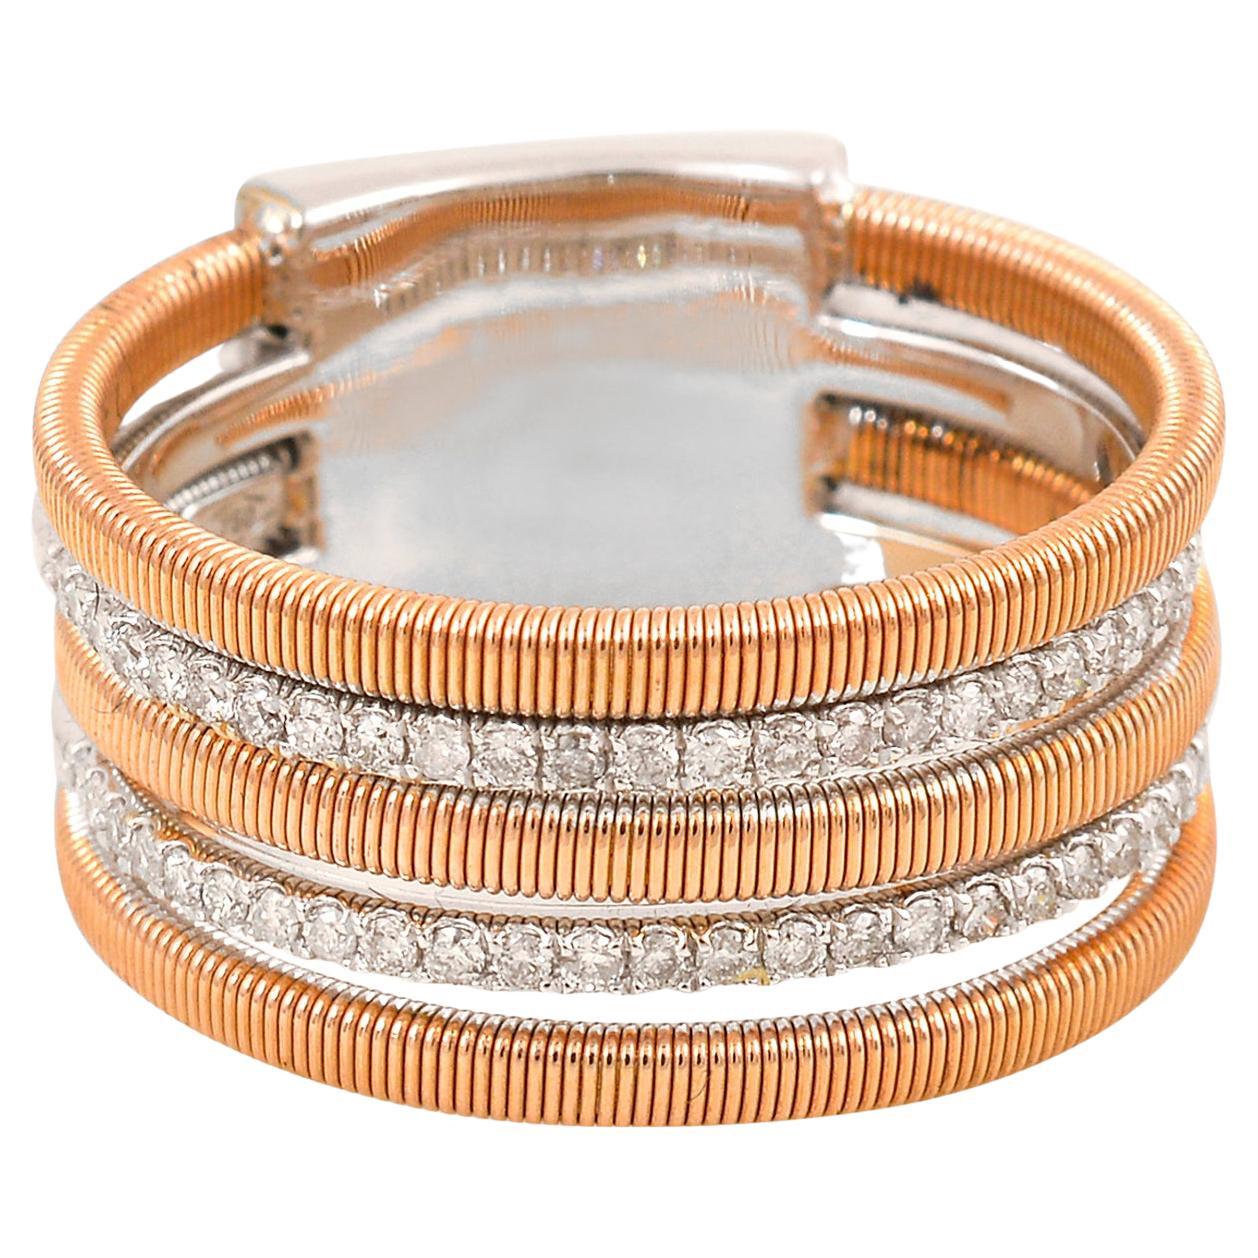 Natural 0.30 Carat Diamond Multi Band Ring 18 Karat White & Rose Gold Jewelry